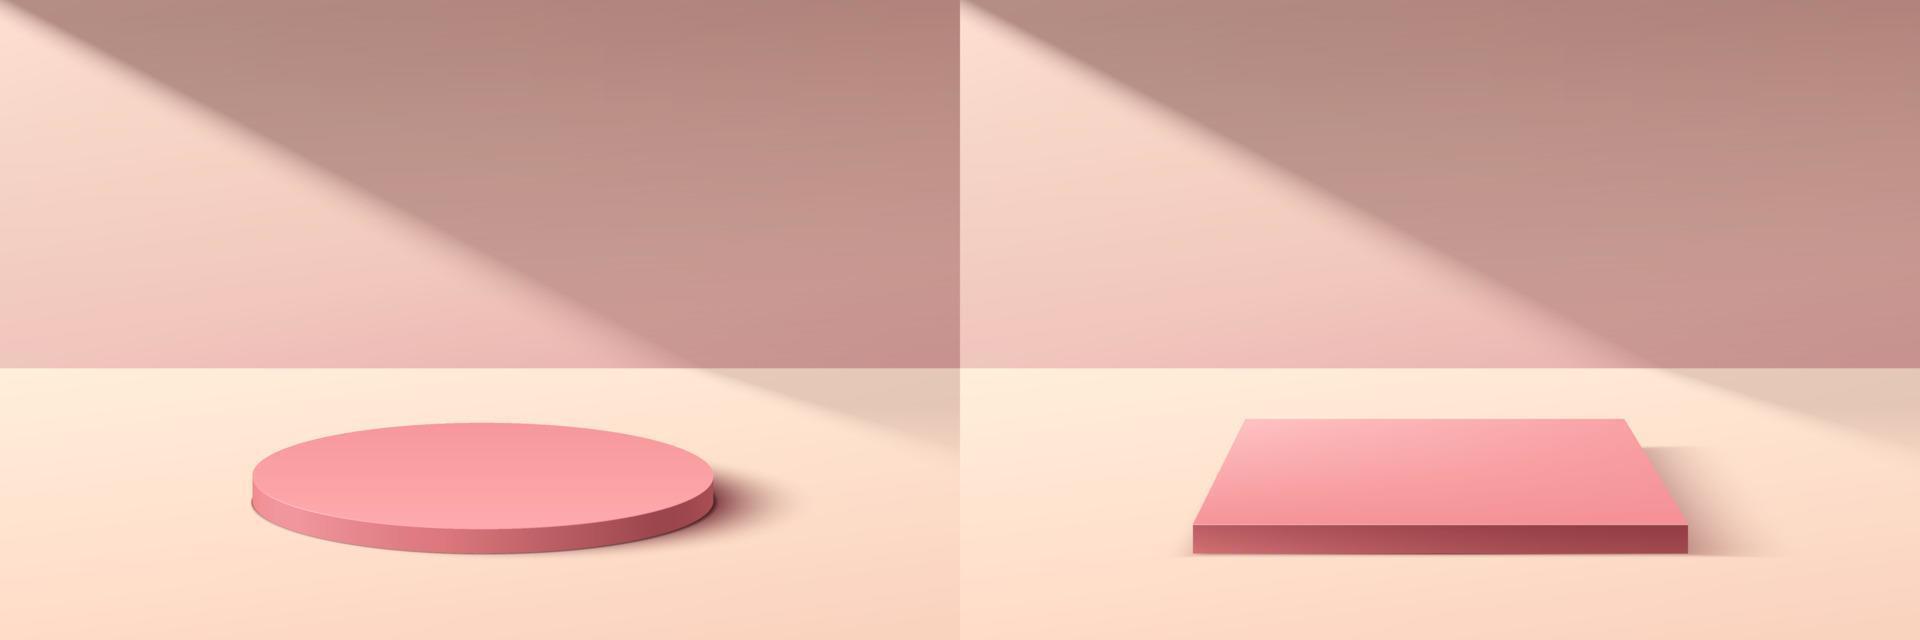 conjunto de pódio de pedestal de cubo e cilindro rosa 3d abstrato com cena de parede mínima rosa pastel na sombra. coleção de plataforma geométrica de renderização vetorial para apresentação de exibição de produtos cosméticos. vetor